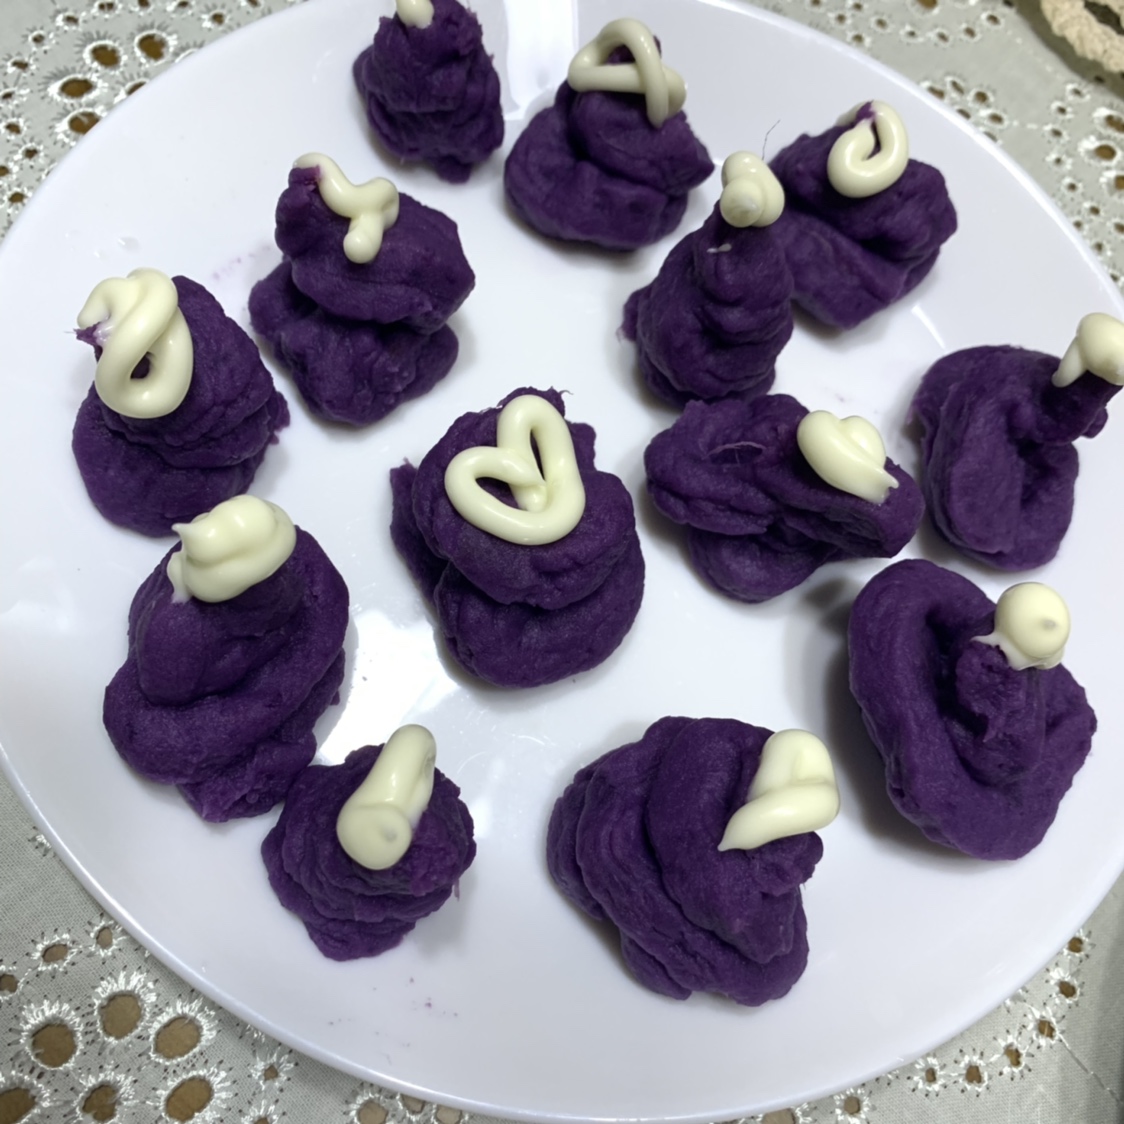 紫薯泥沙拉